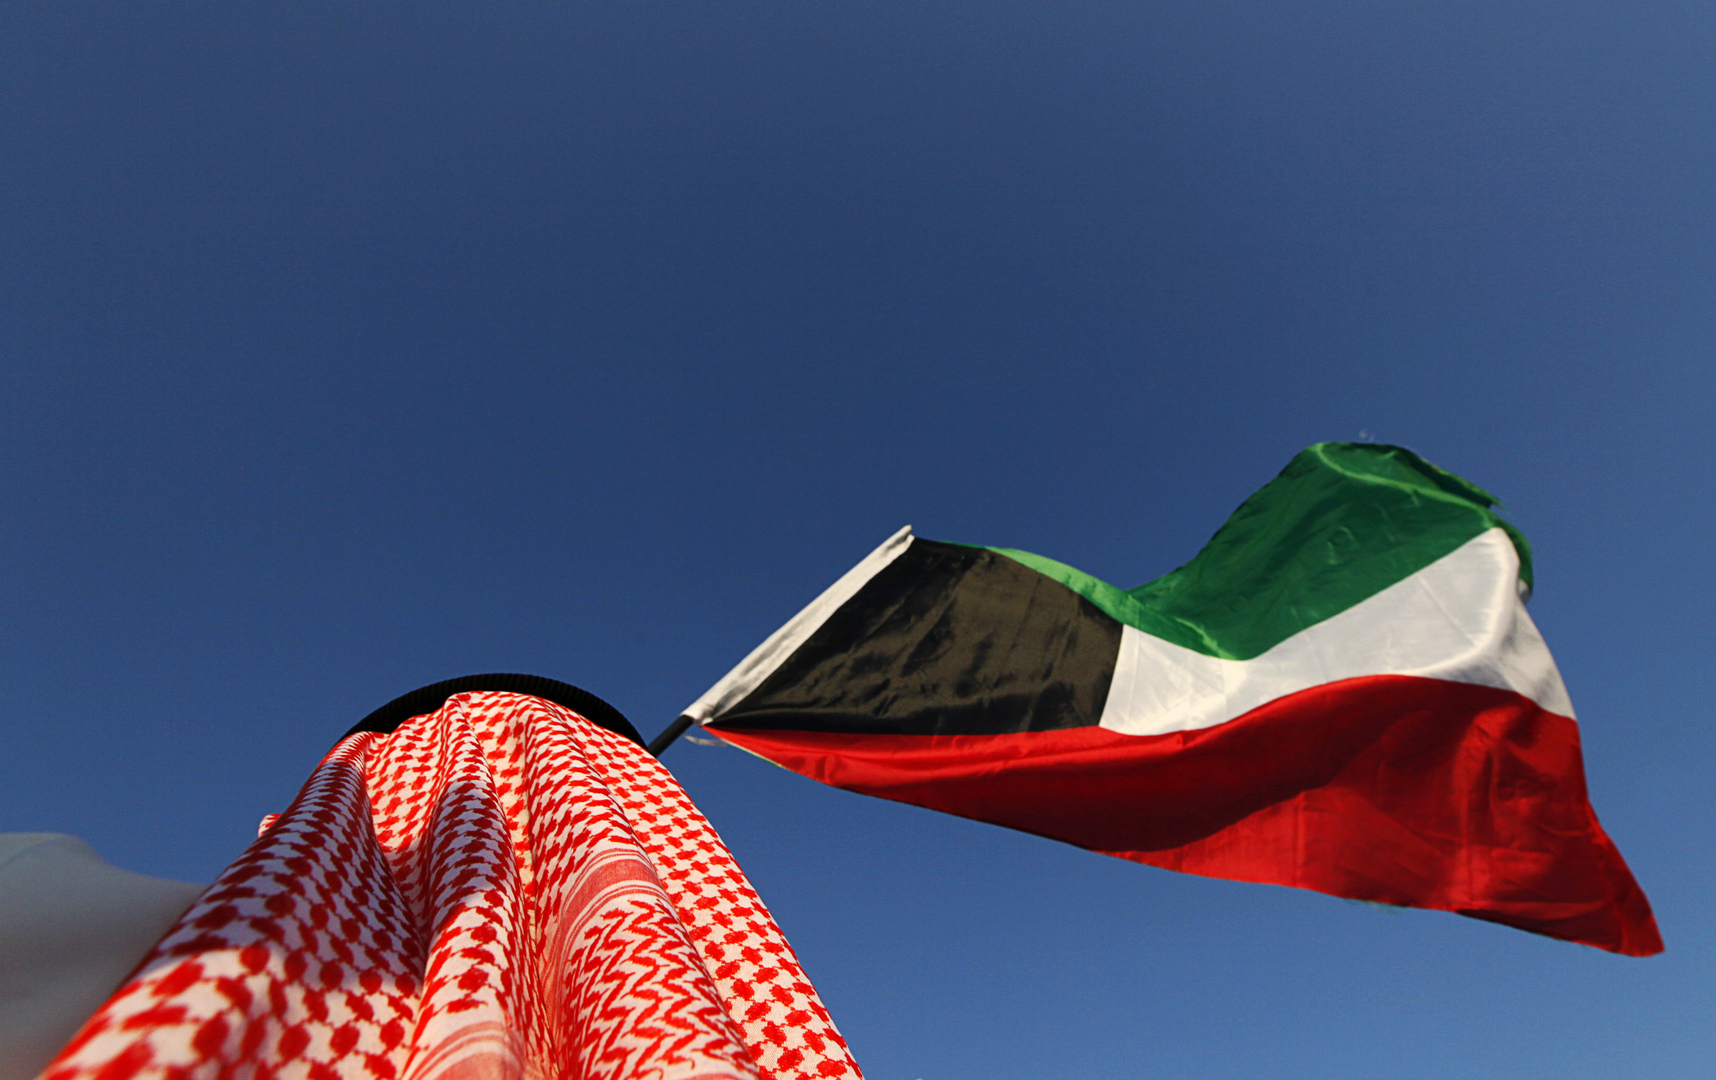 مجلس الوزراء الكويتي: 12.1 مليار دينار العجز المتوقع في ميزانية الدولة 2021-2022